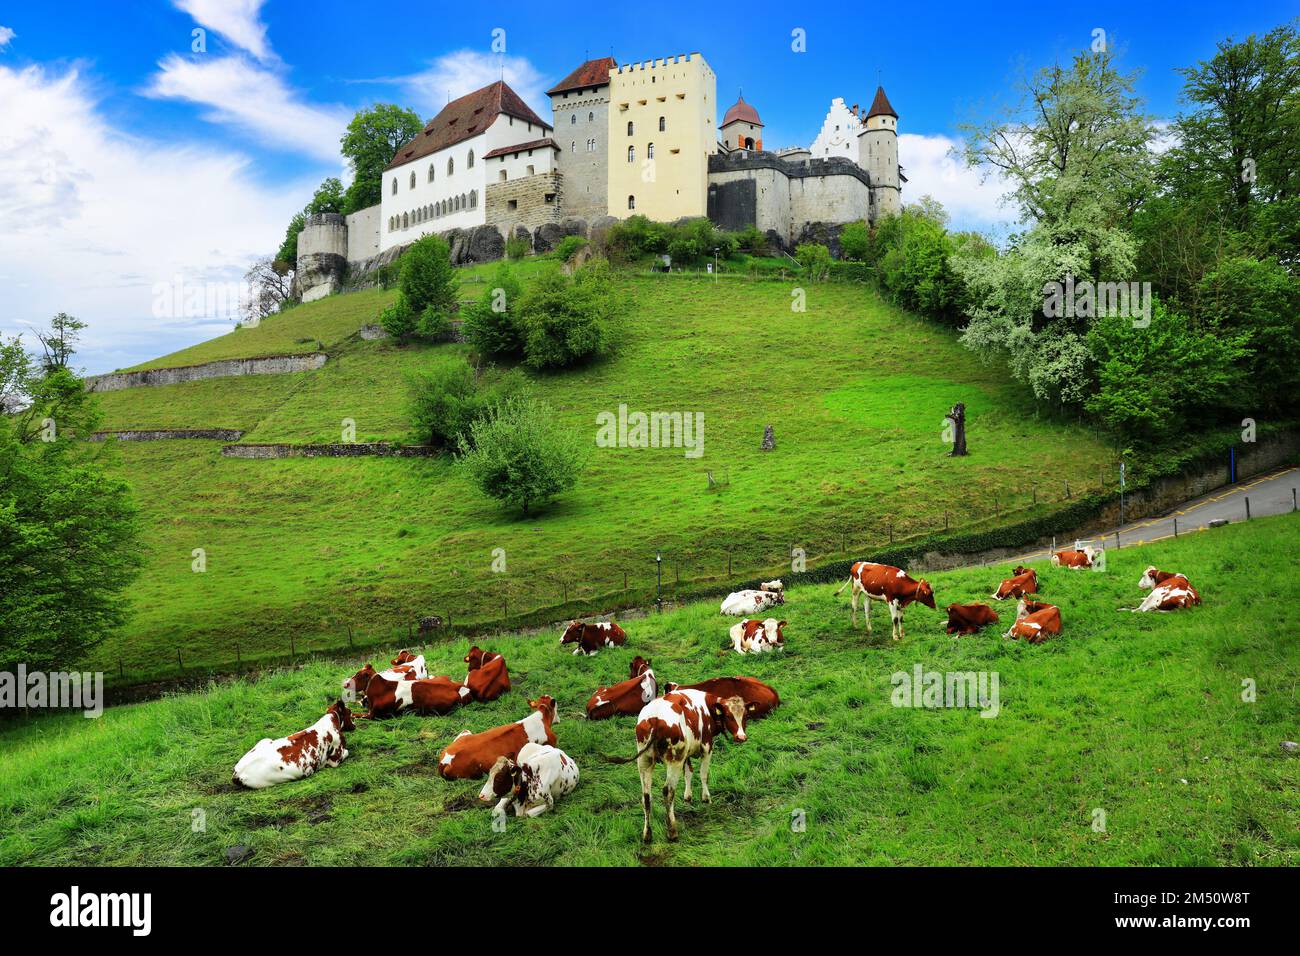 Panorama svizzero con castelli medievali, pascoli verdi e mucche. Lenzburg , Svizzera Foto Stock